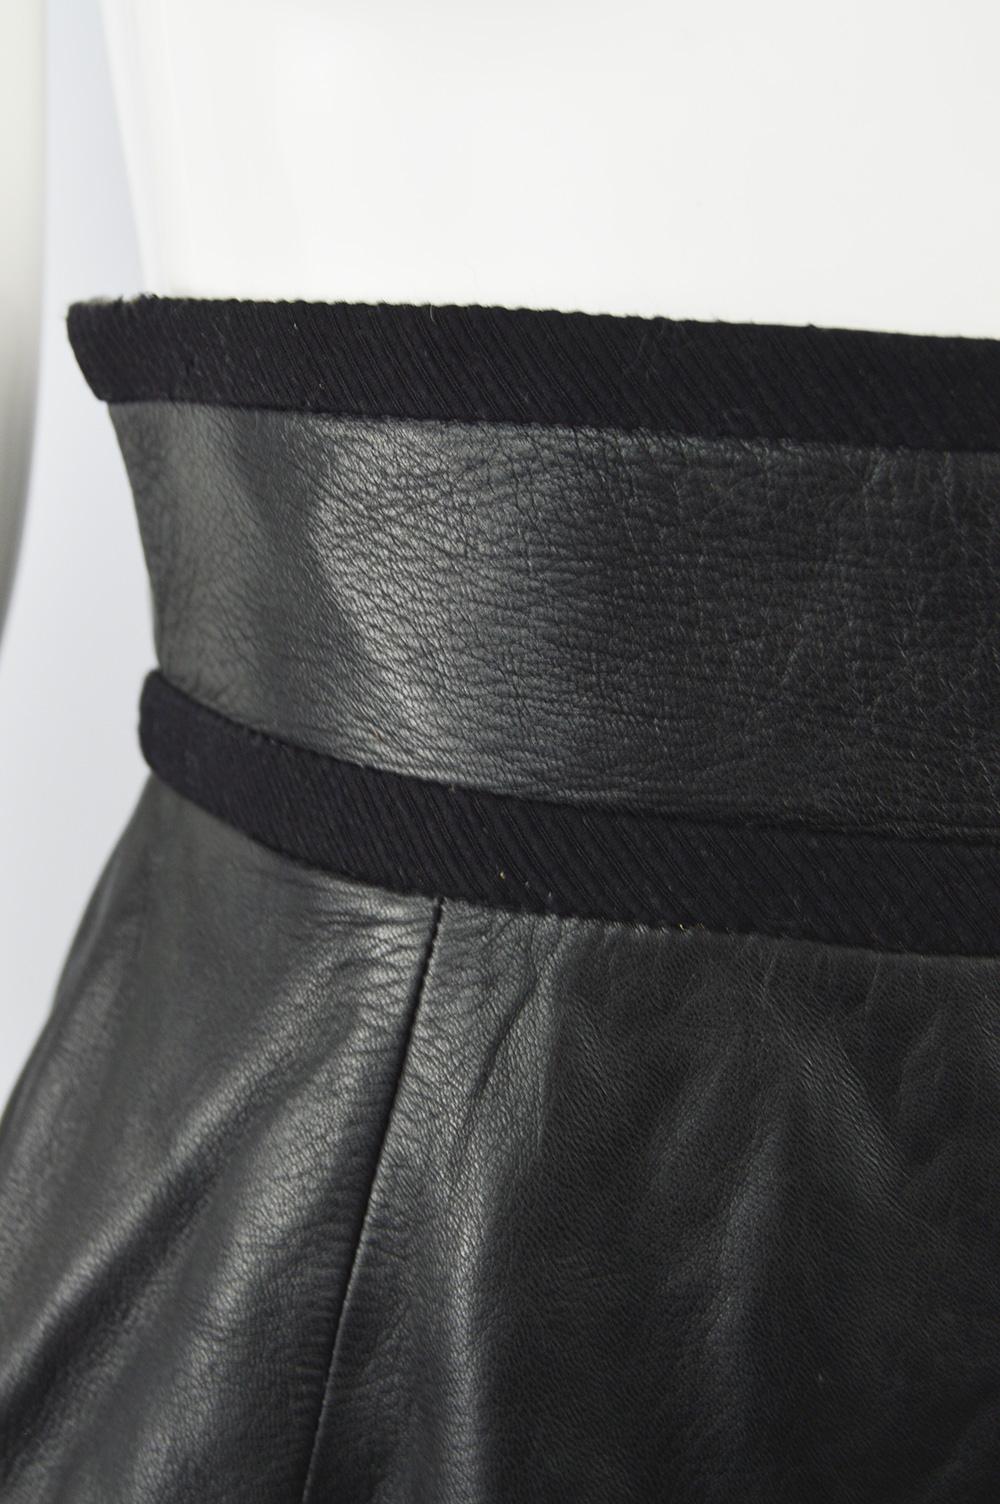 loewe leather skirt